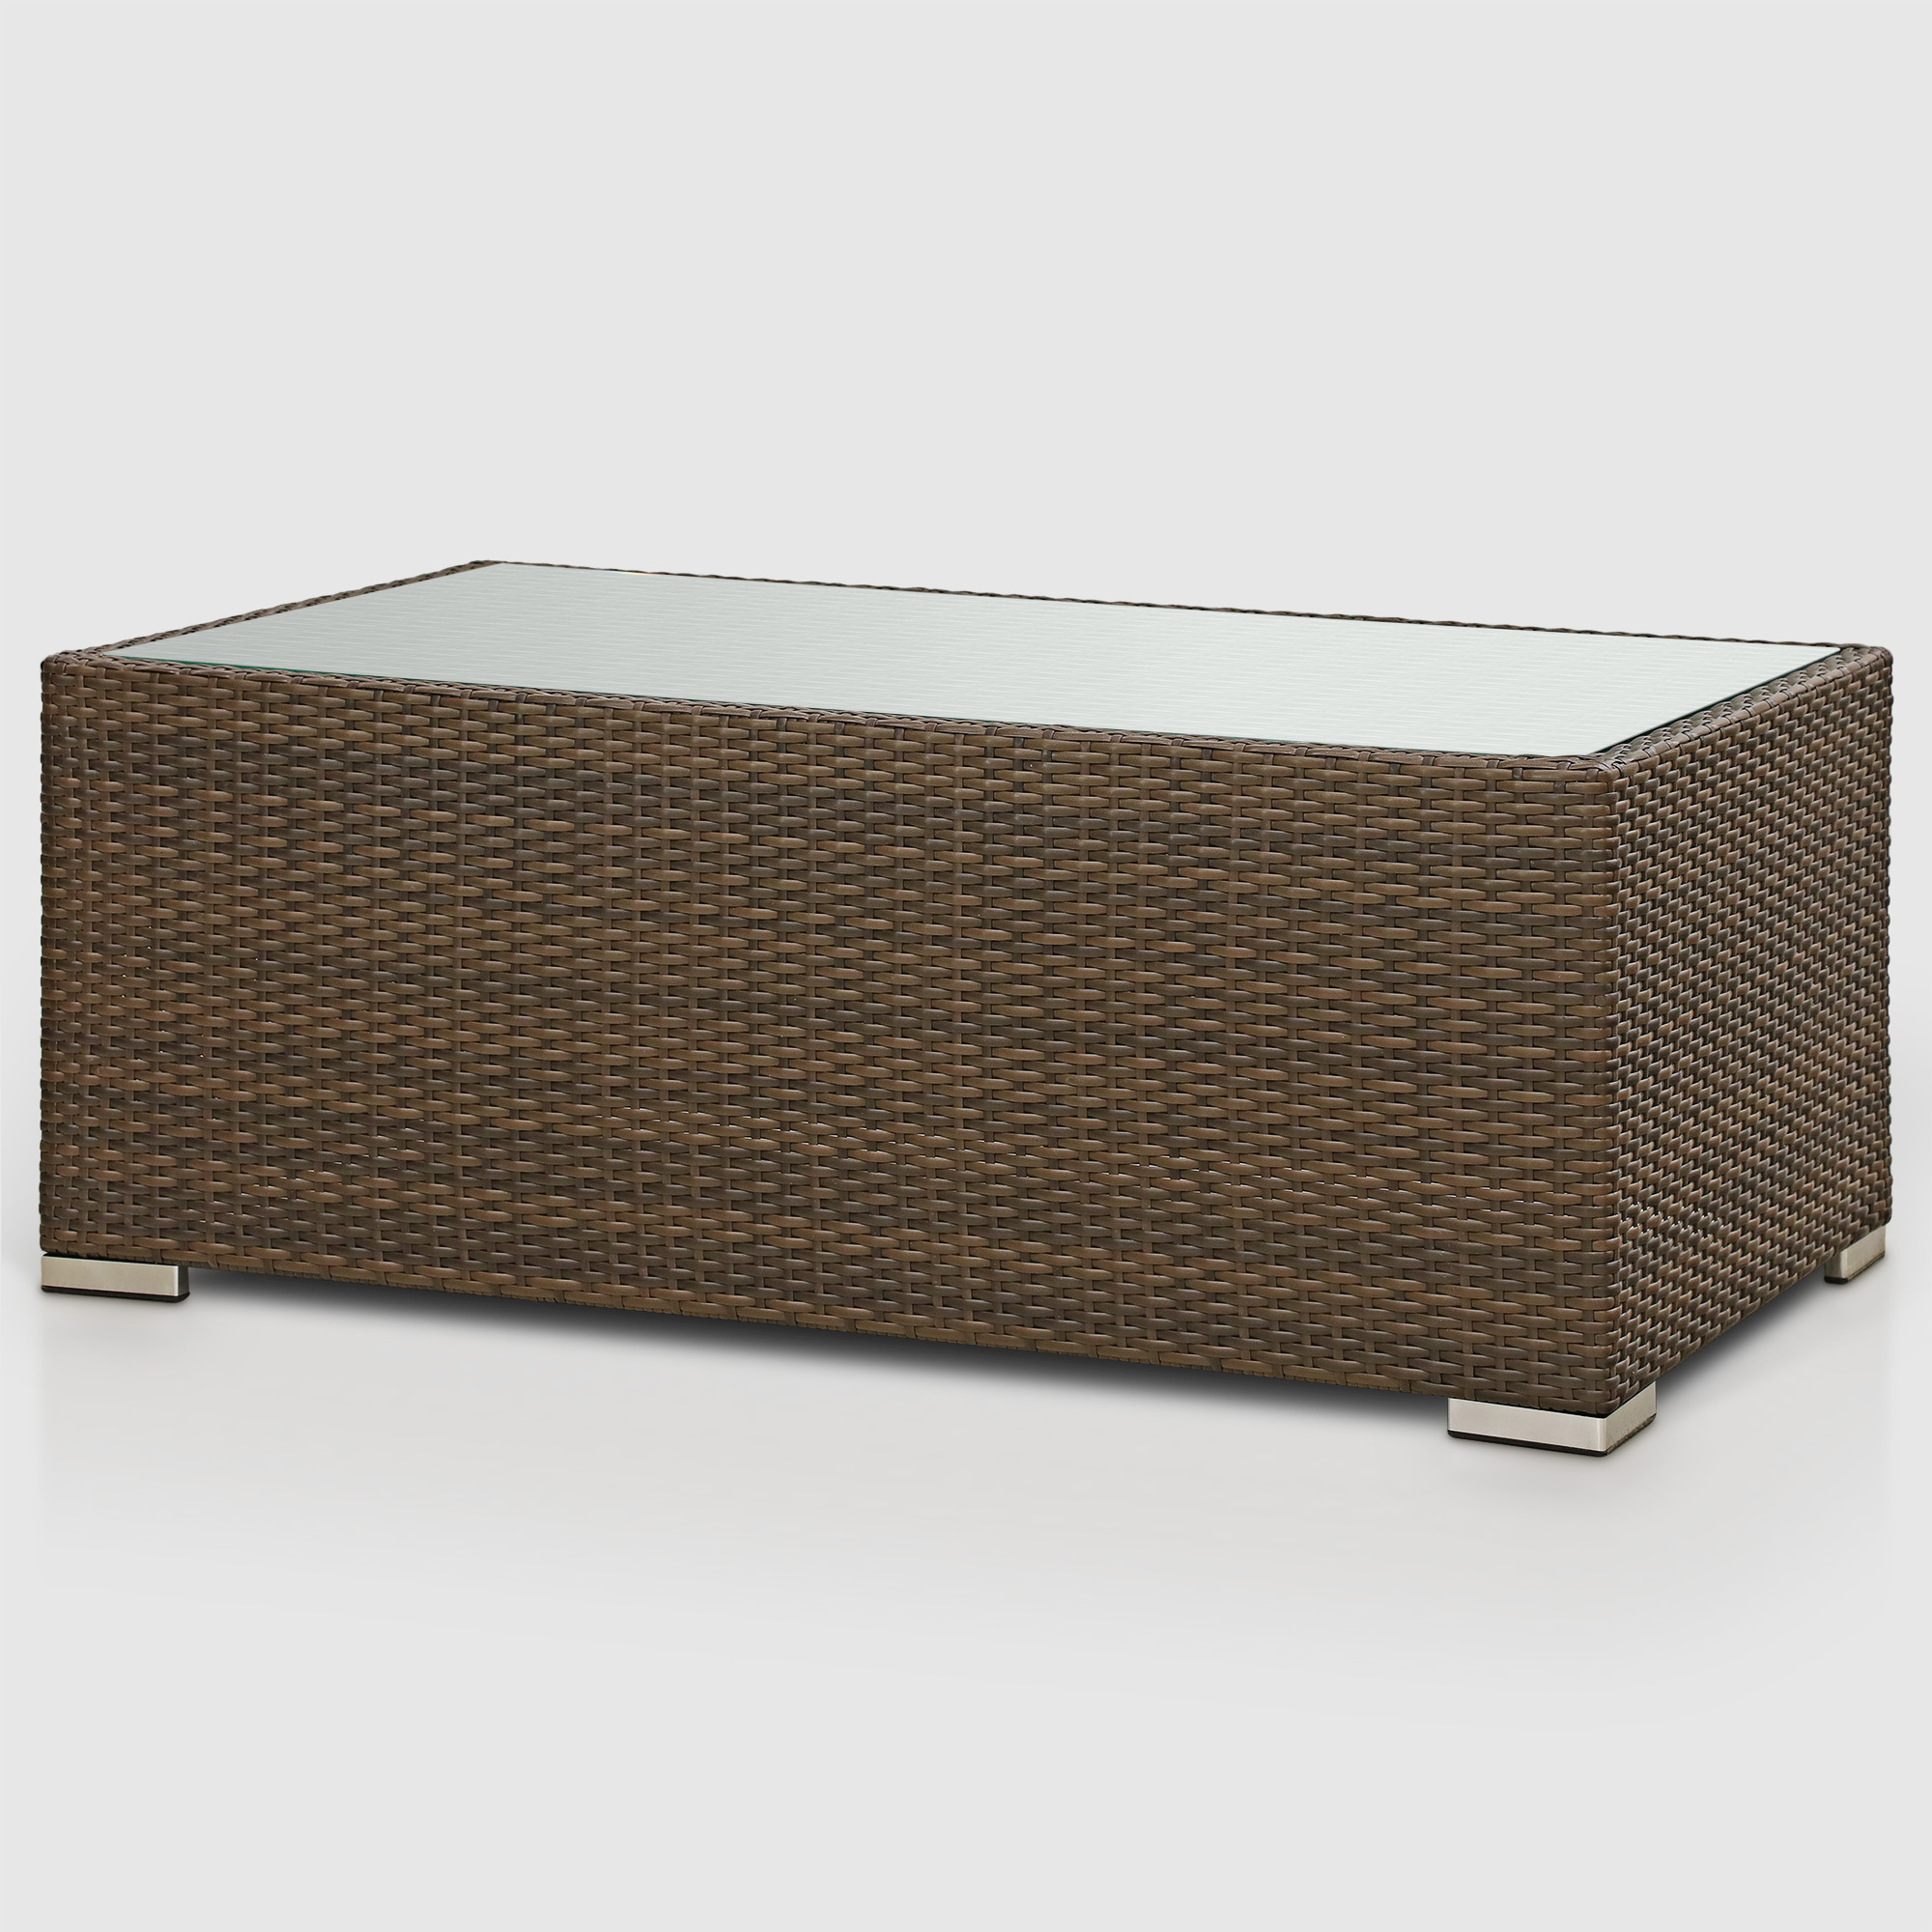 Комплект мебели Ns Rattan Cleo коричнево-бежевый 7 предметов, цвет коричневый, размер 199х68х72 - фото 14